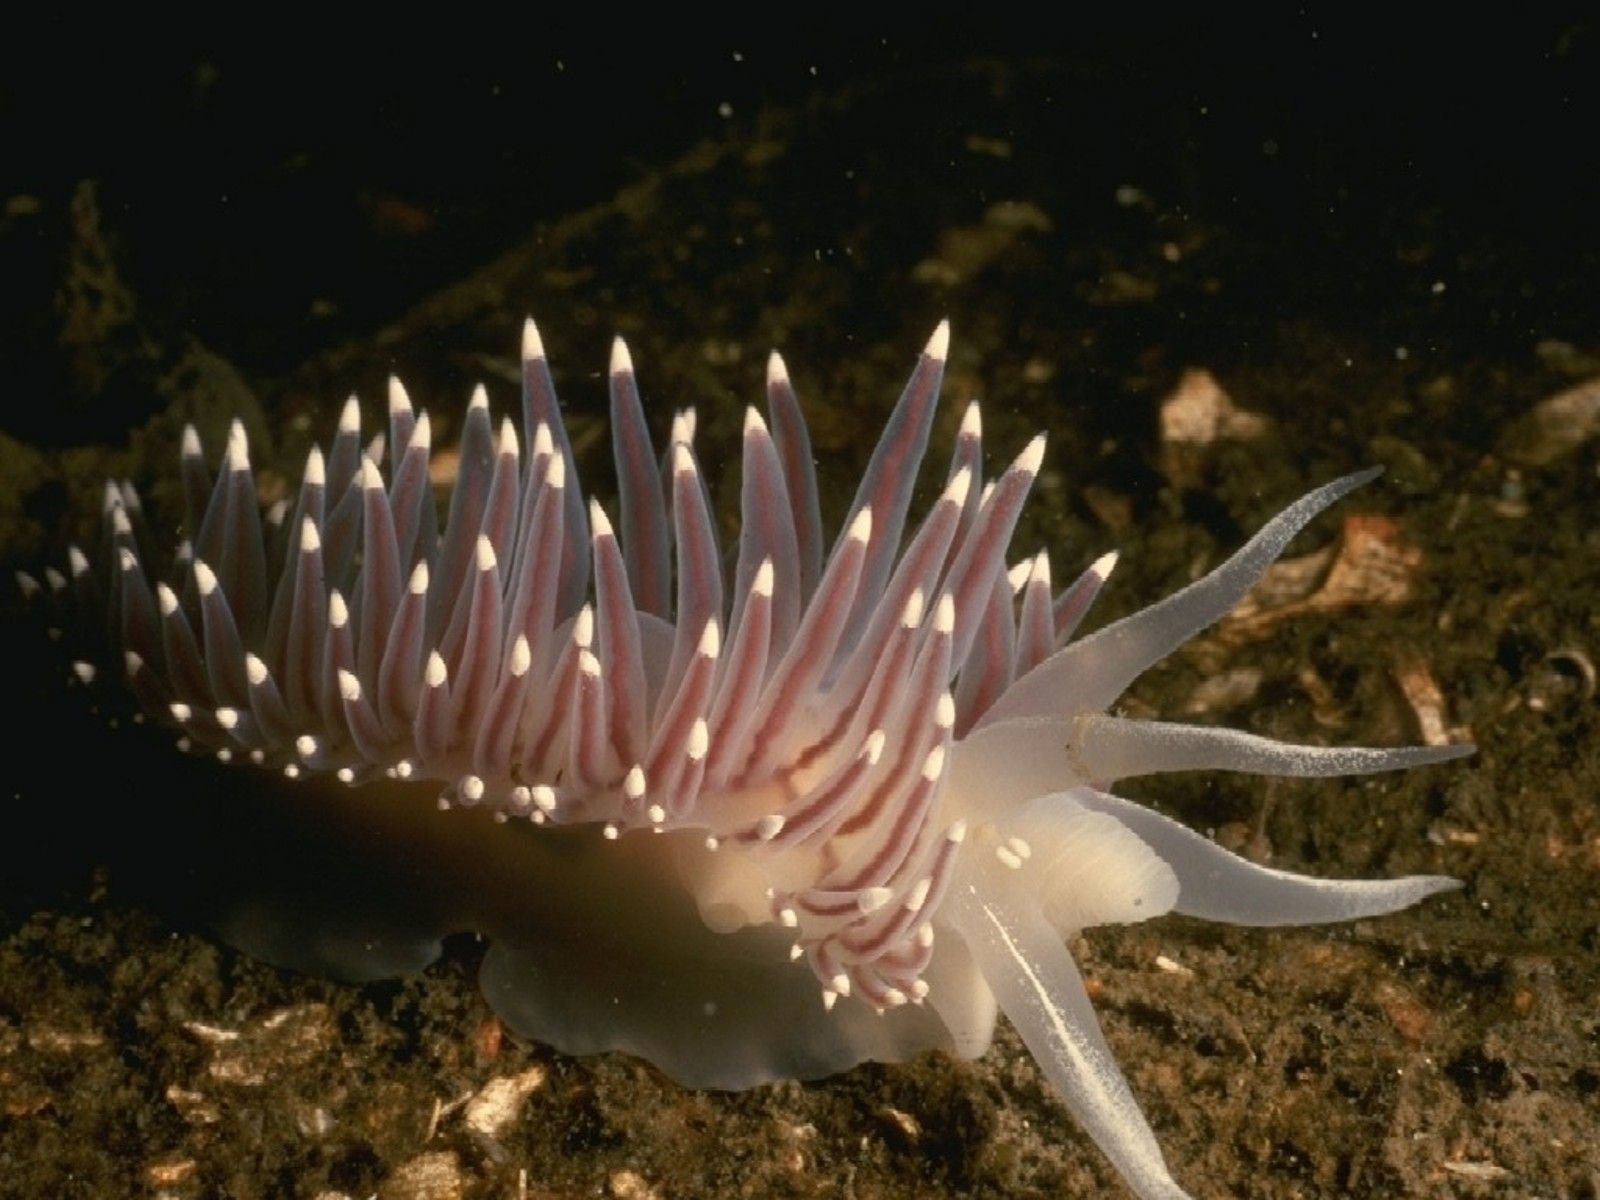 Nudibranch sea slug is a Herbivorous mollusk